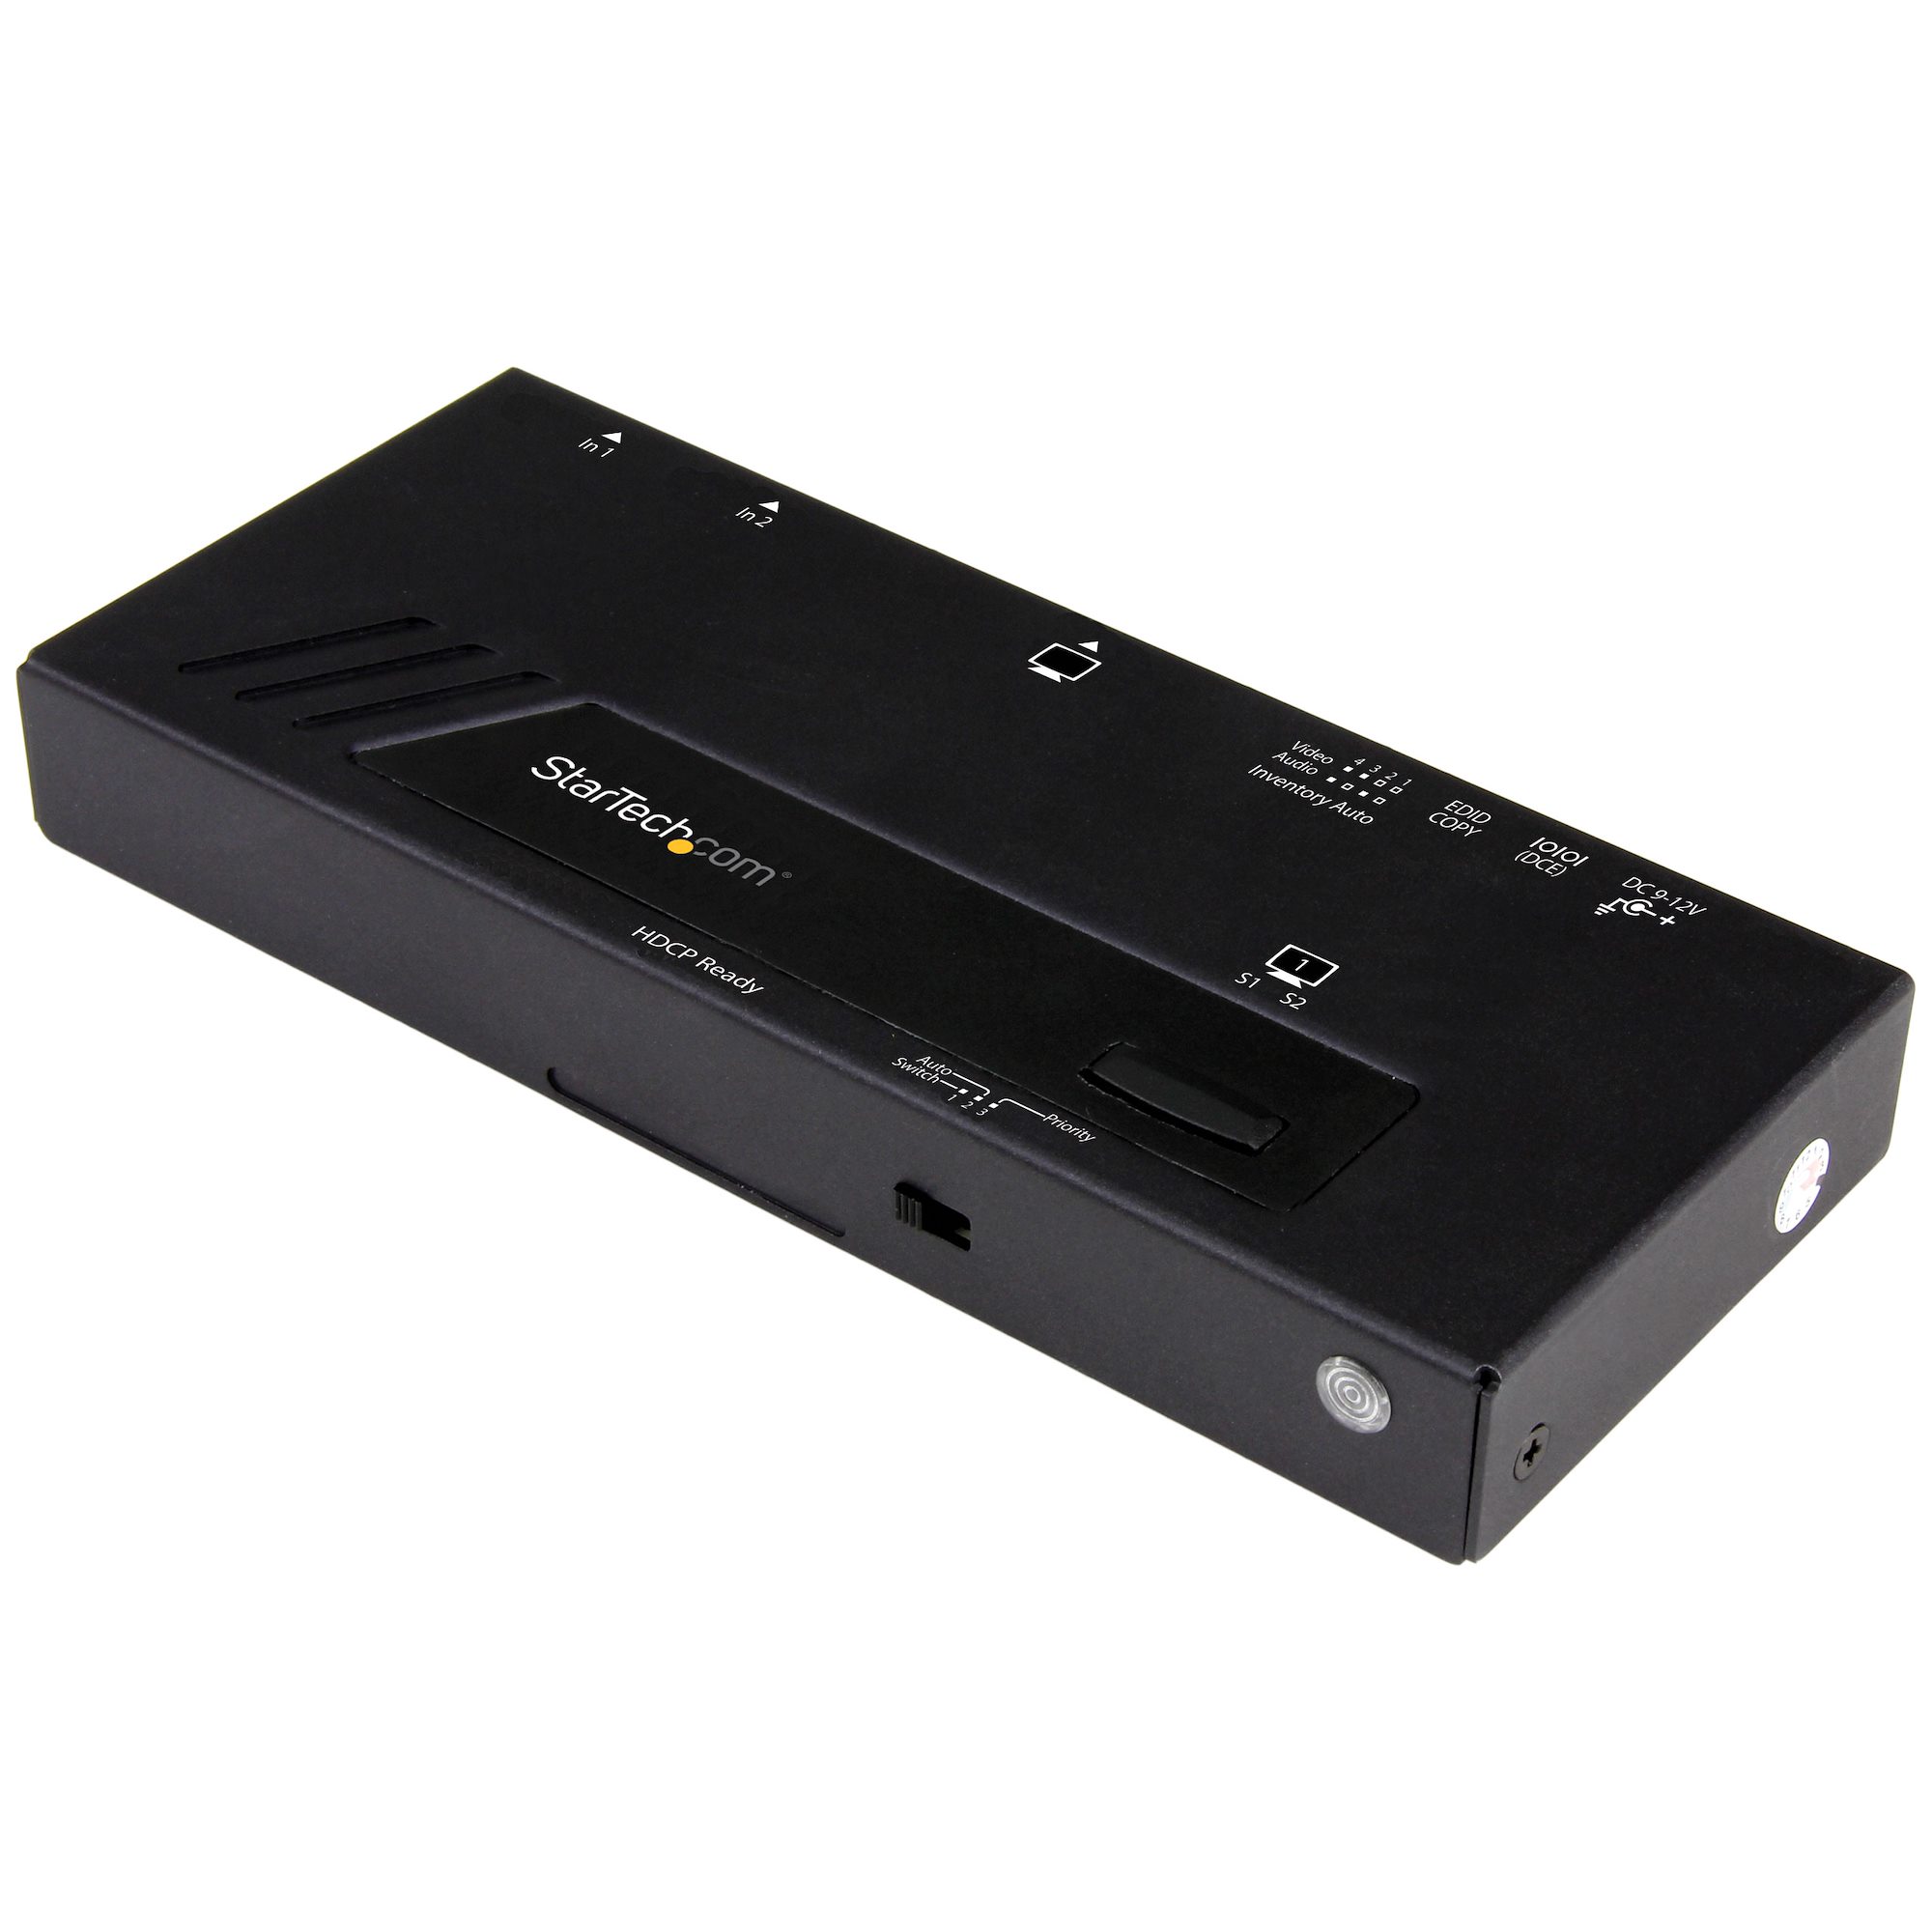 2入力1出力HDMI切替器 4K 2x1 HDMIスイッチ 高速・自動切替機能 ビデオ スイッチャー 日本